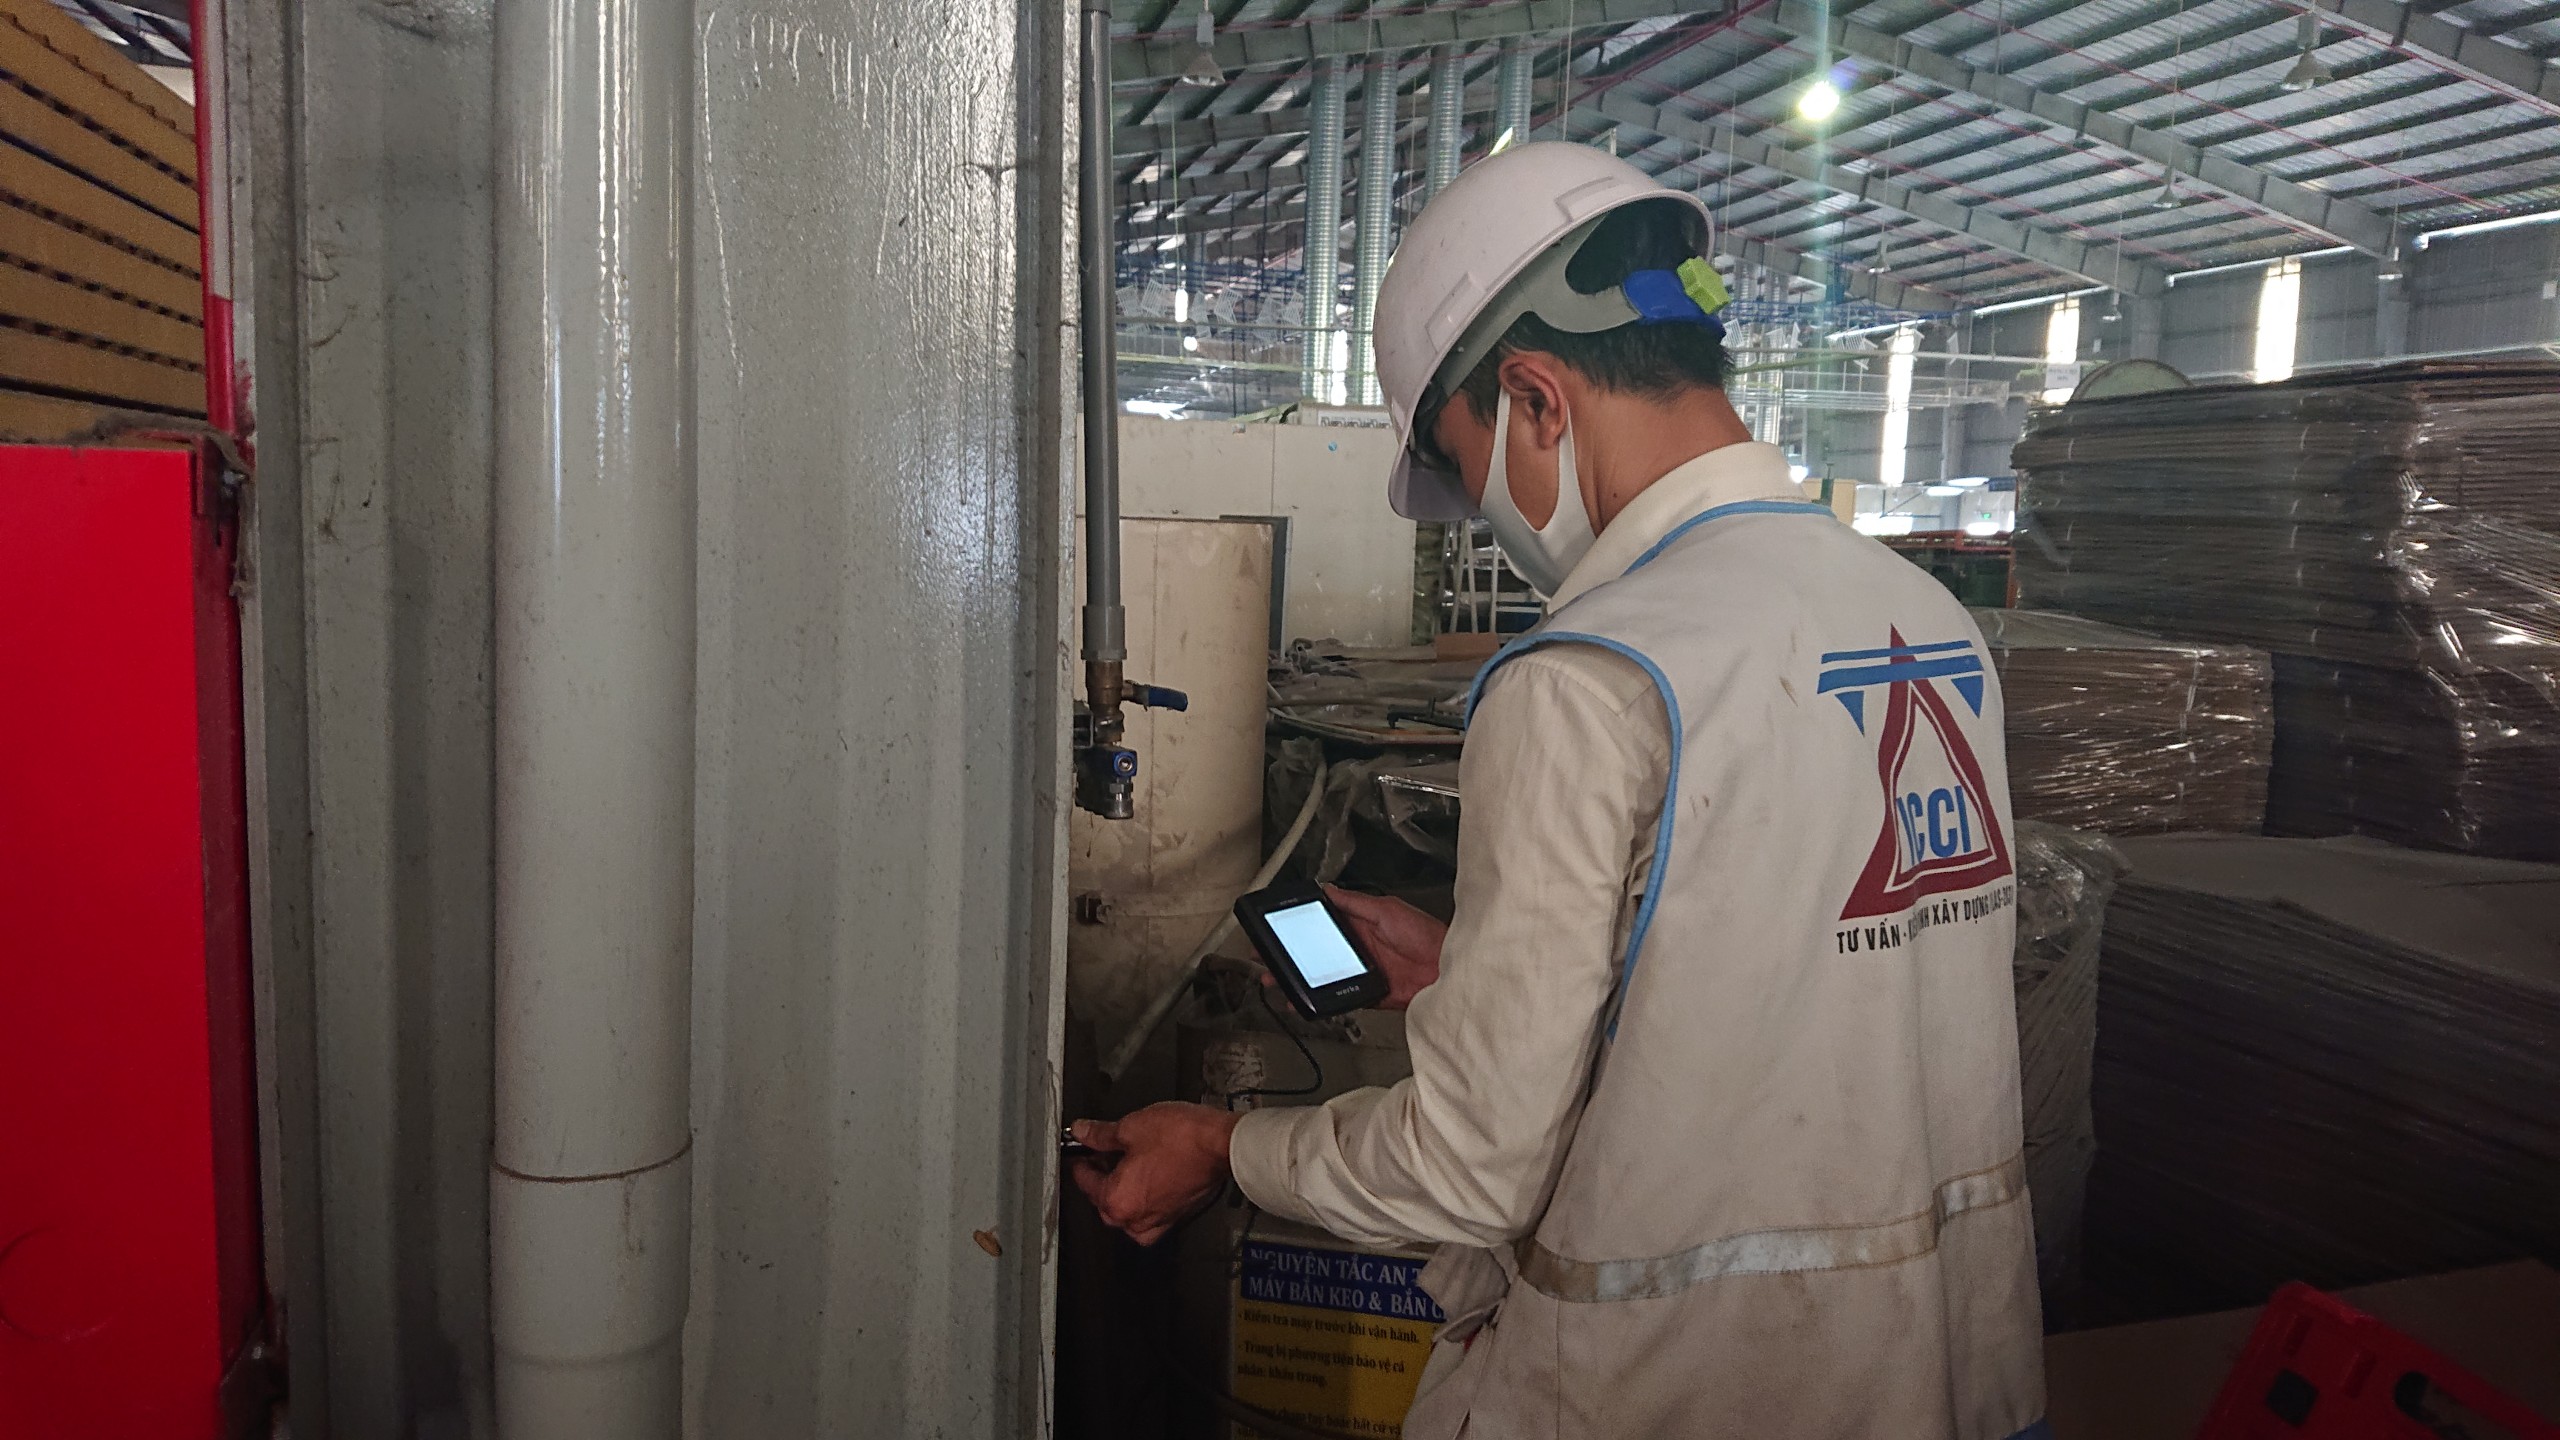 ICCI kiểm tra cốt thép trong cấu kiện bê tông trong quá trình kiểm định chứng nhận chất lượng nhà xưởng